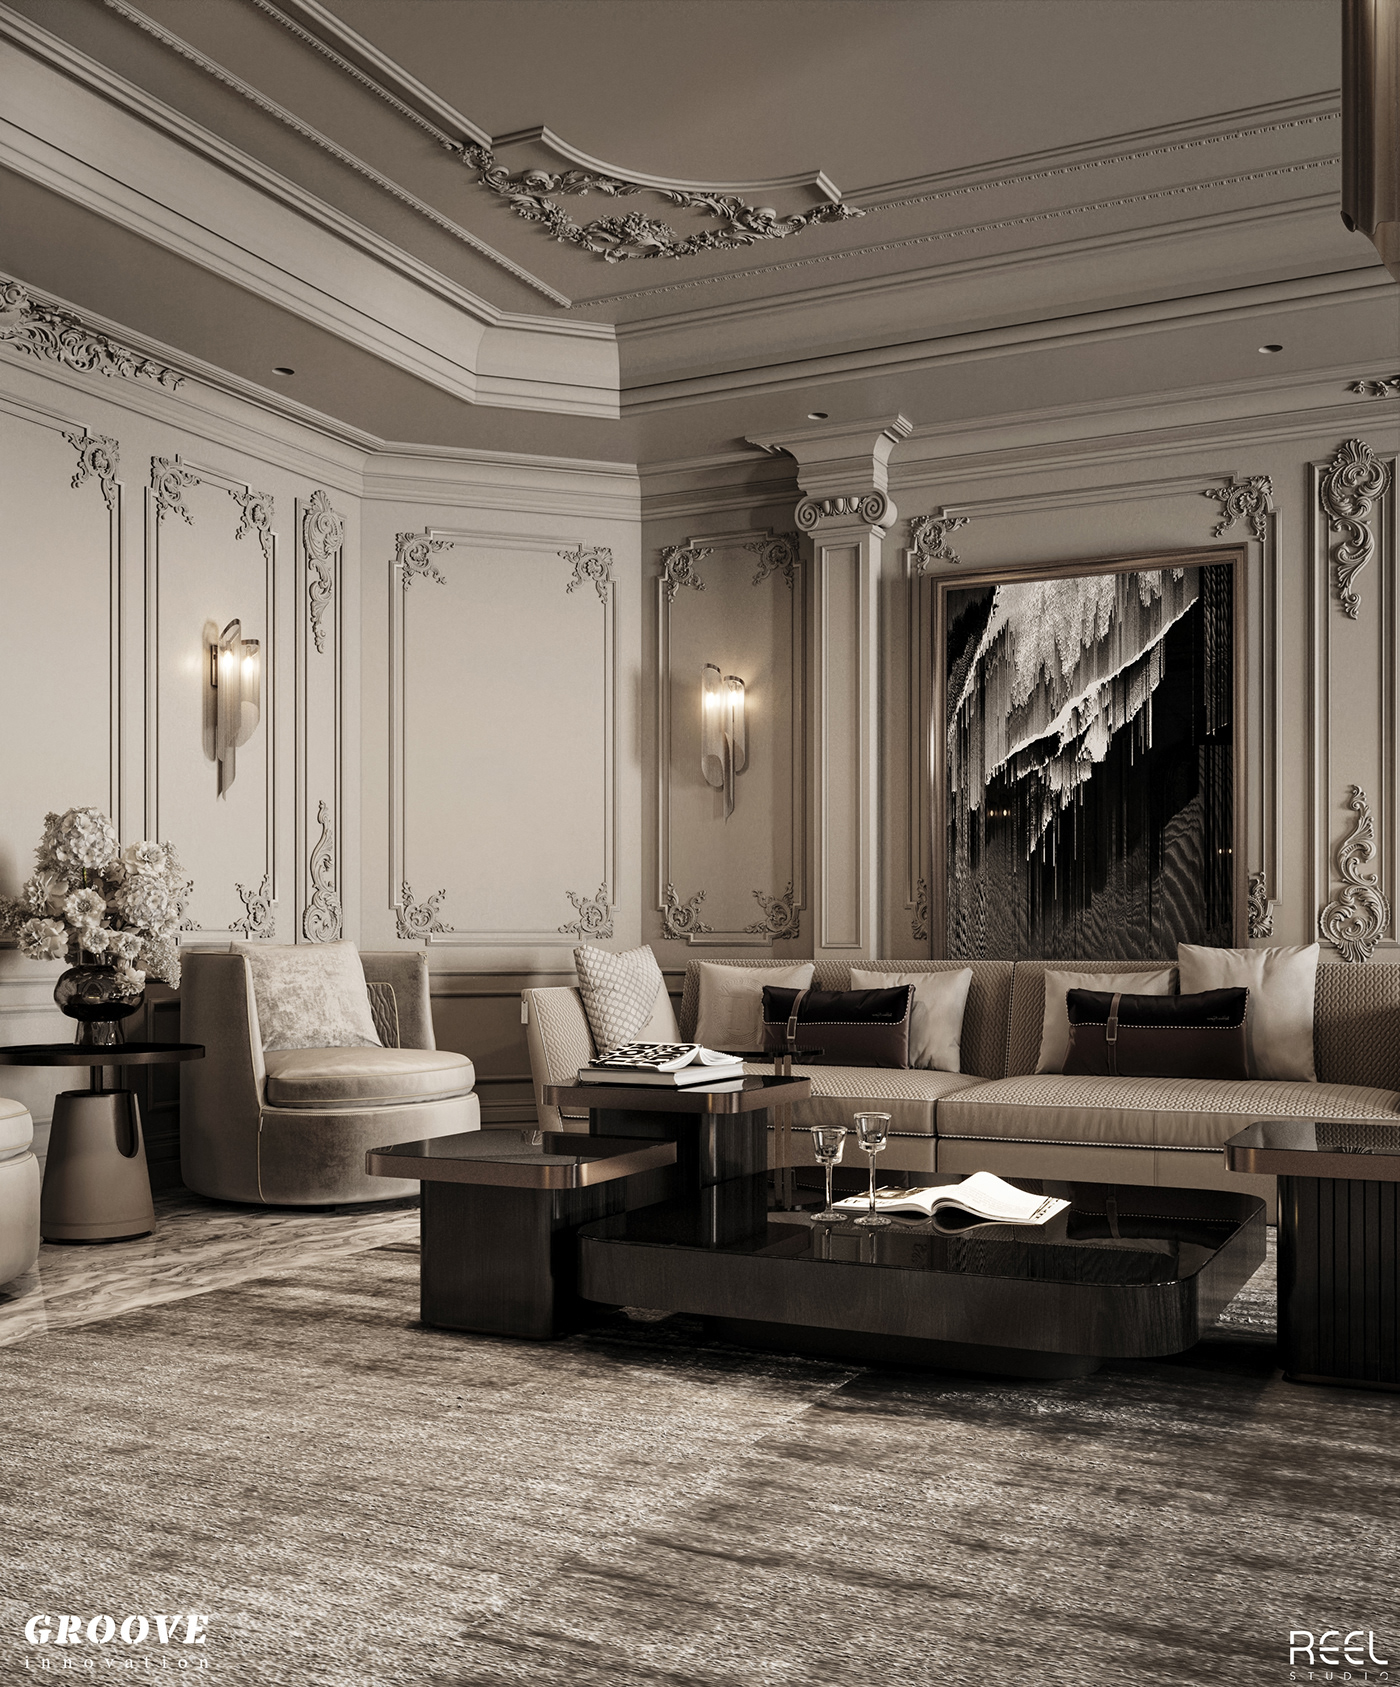 MAJLIS majlis design interior design  Interior interiordesign Studia54 tolko cozy living room classic design